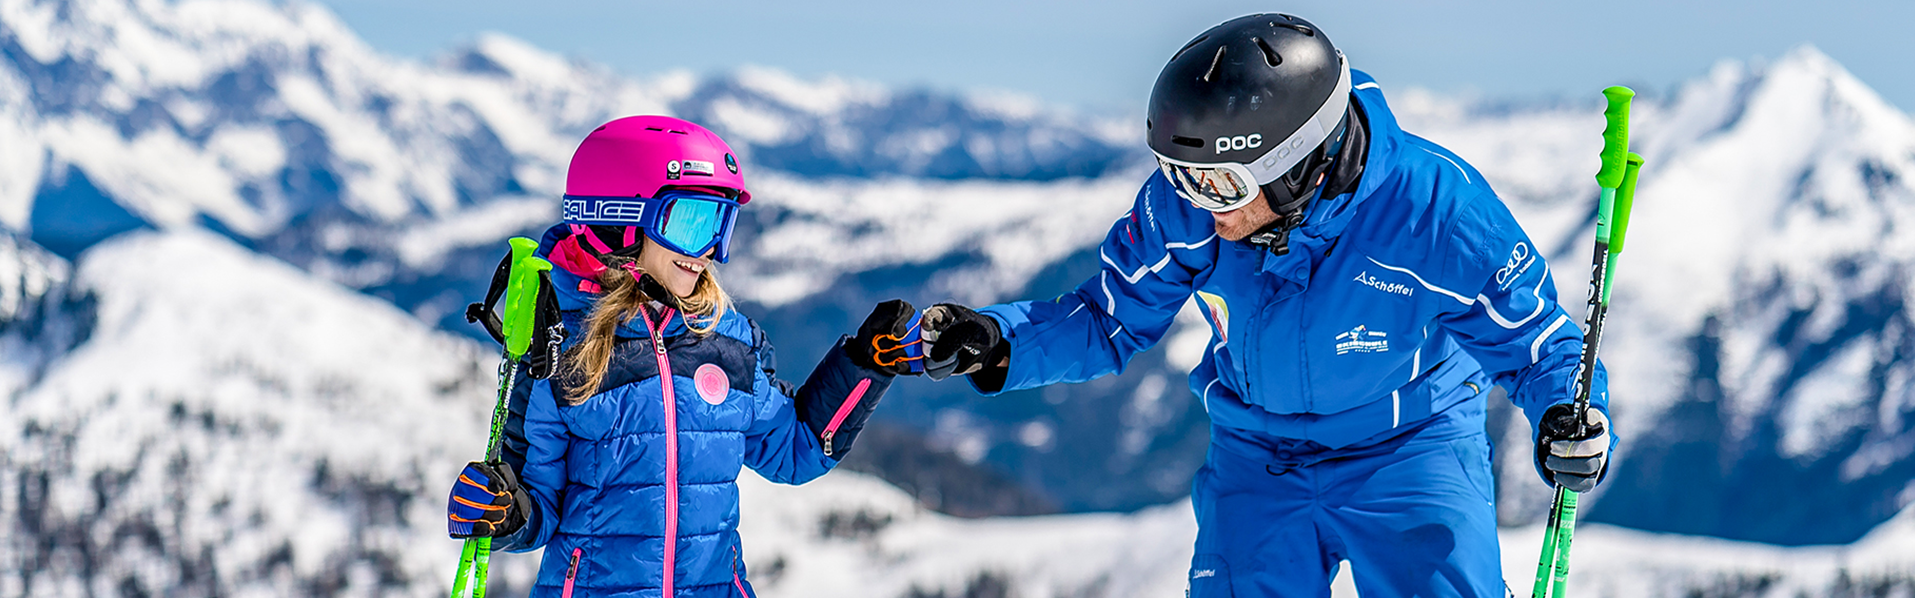 Leer skiën in Flachau - skicursussen voor kinderen